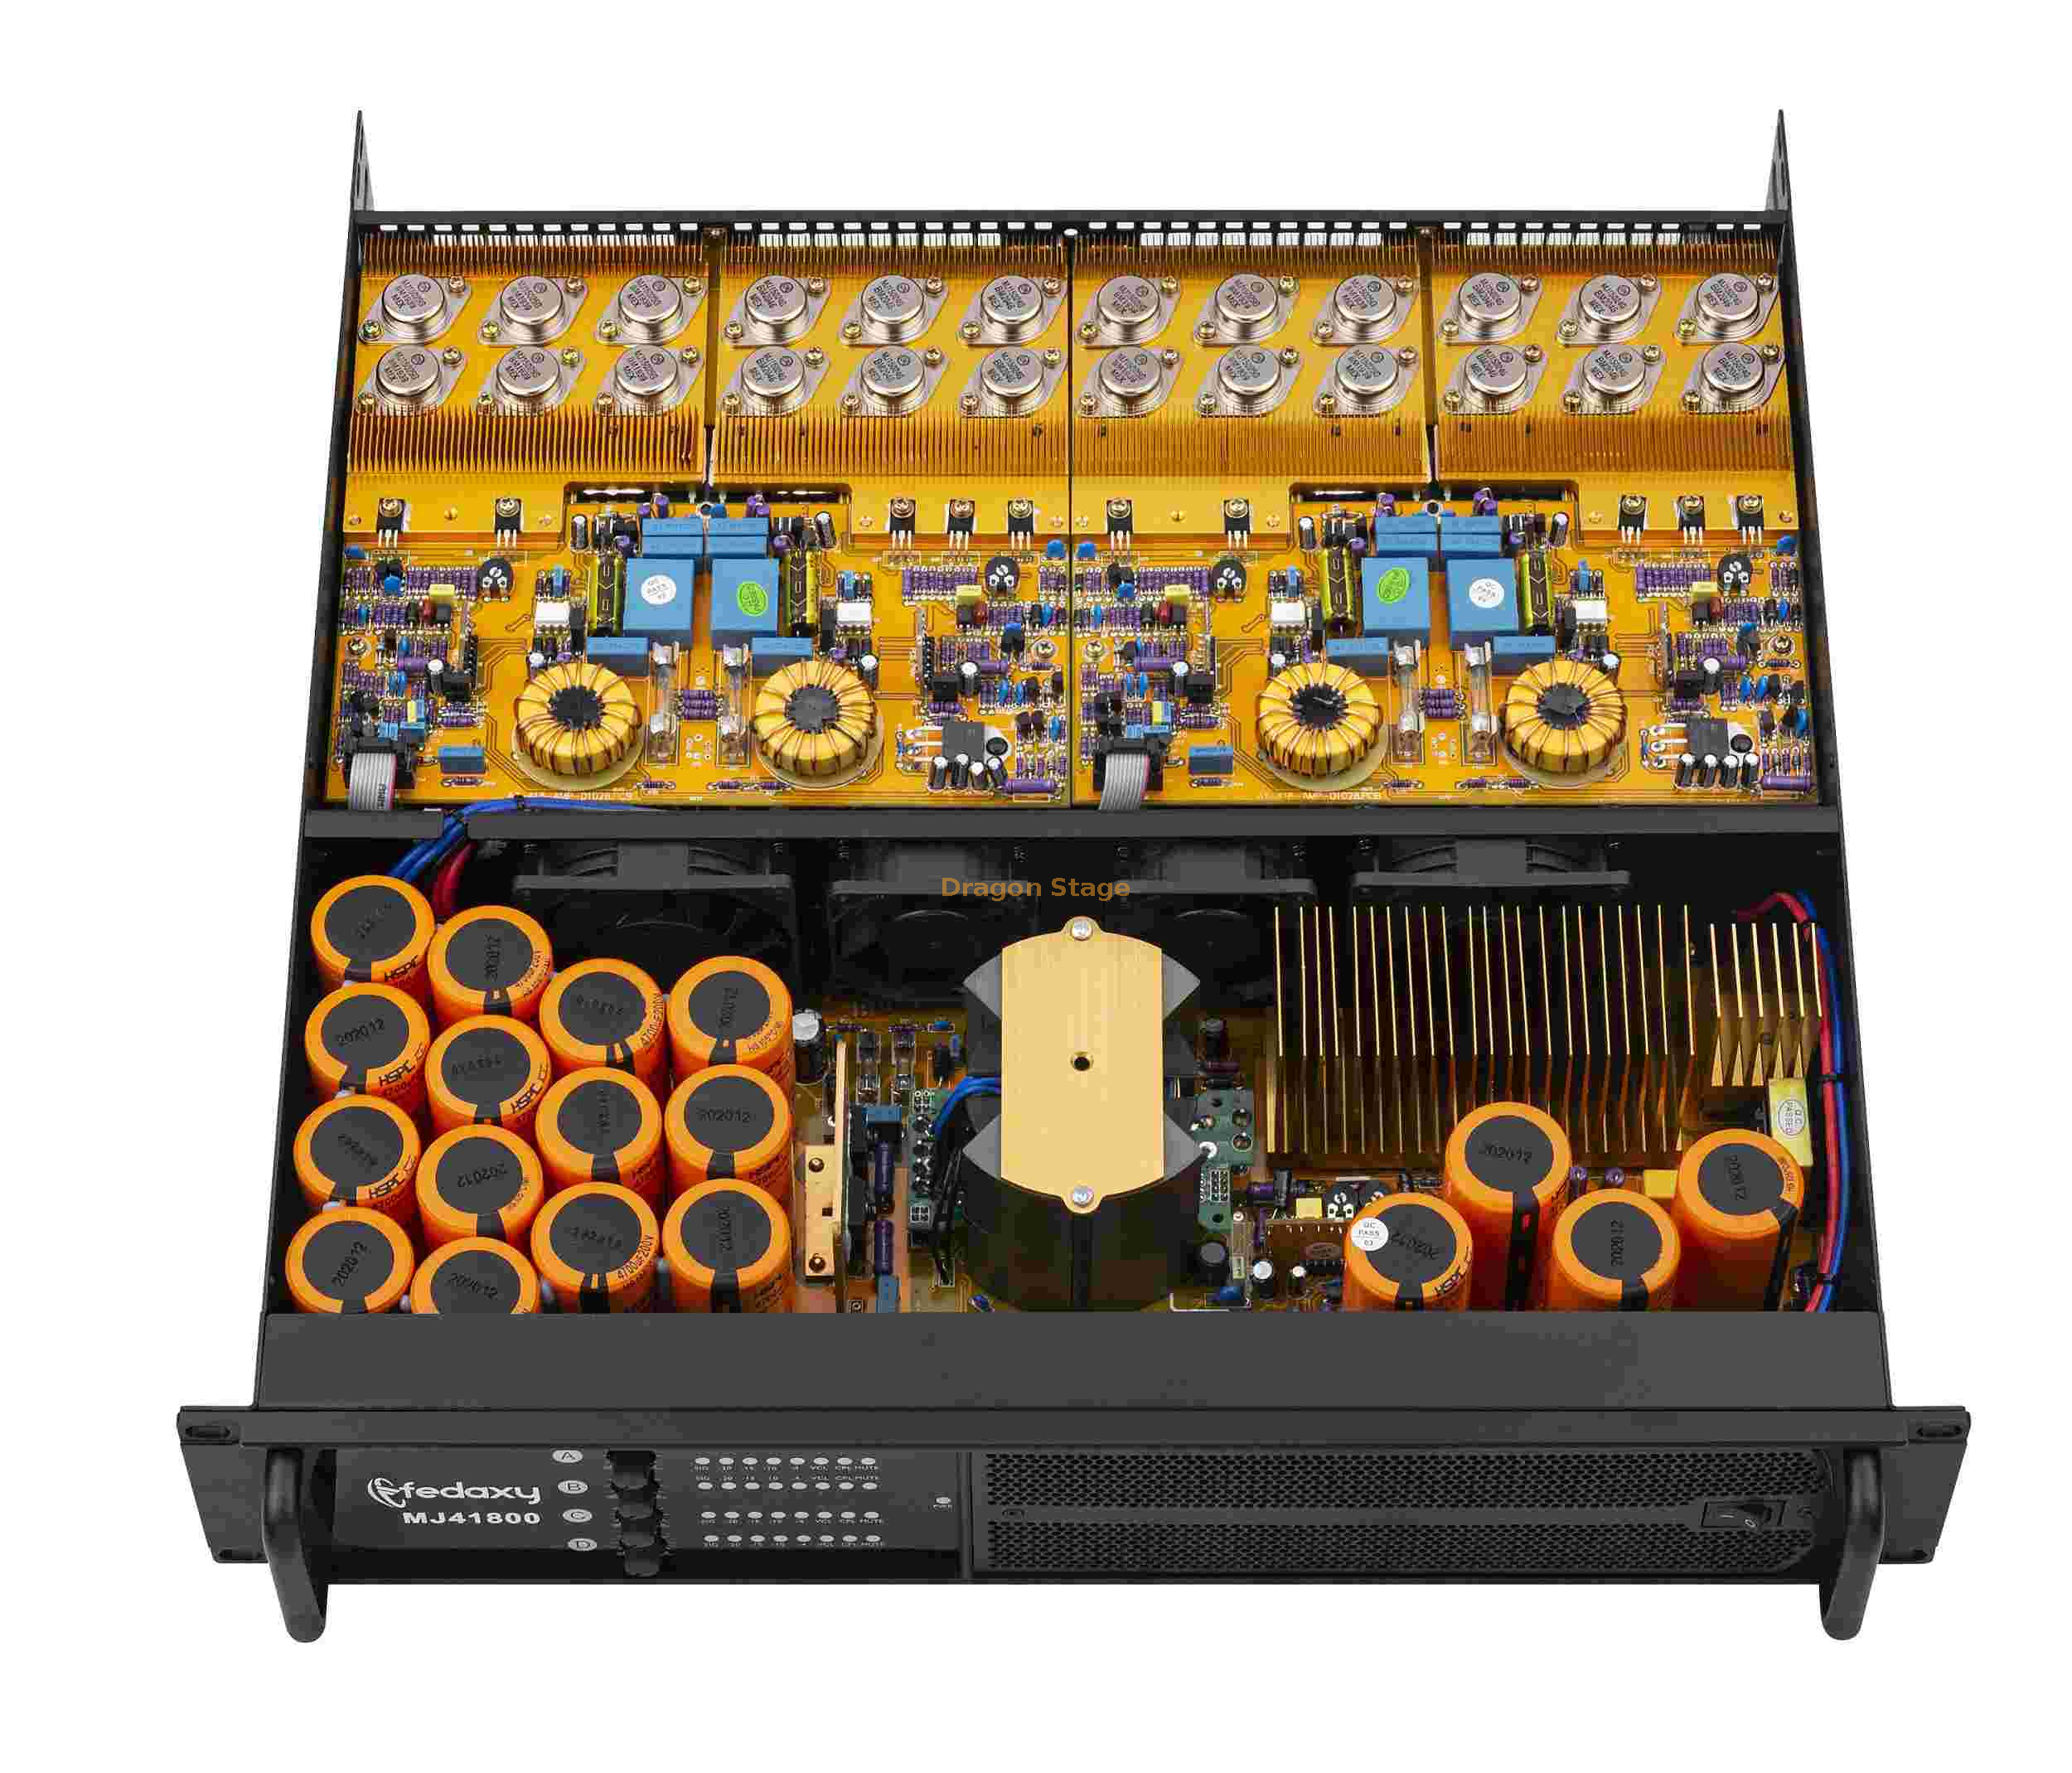 Amplificador de audio profesional de alta potencia con circuito de clase TD amplificador de potencia de 4 canales y 1300 vatios